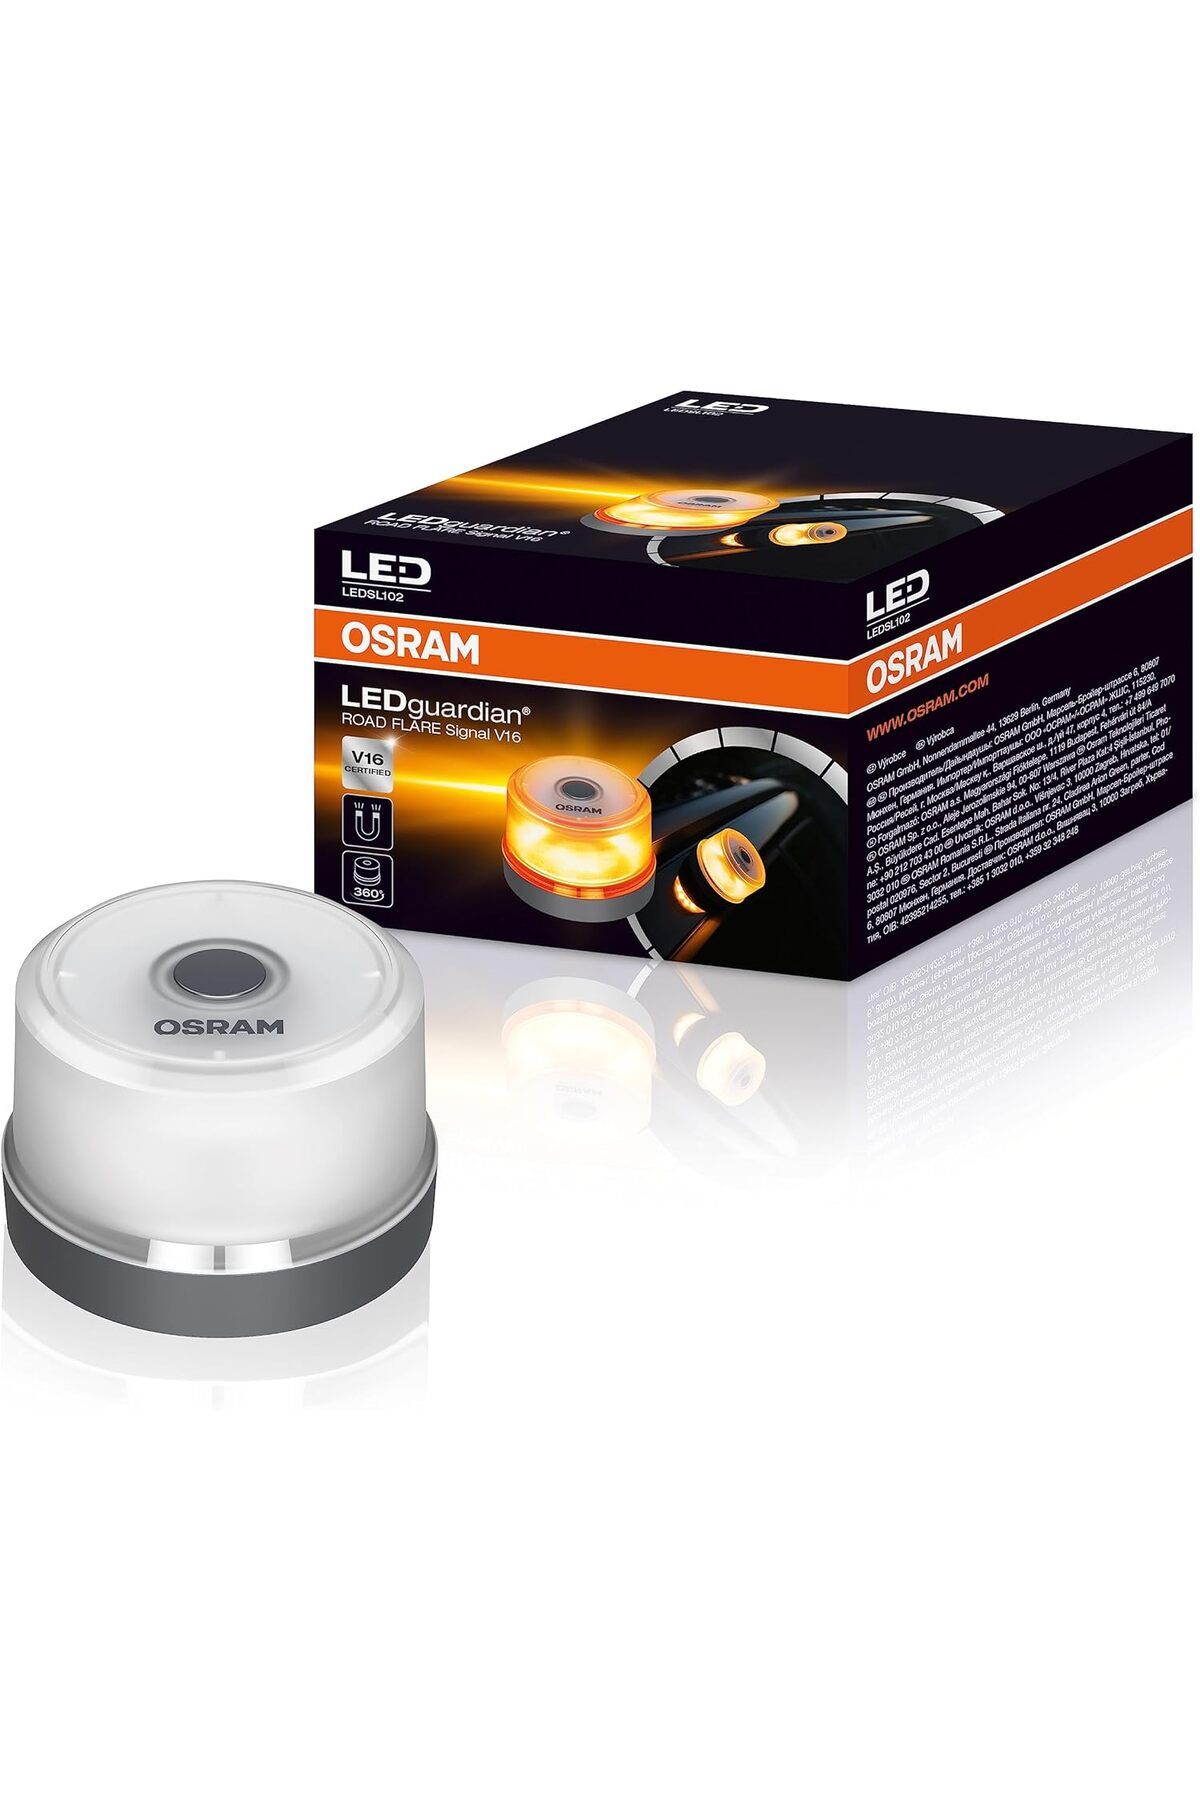 Osram Güçlü LED'lere sahip acil durum flaşör ışığı, yuvarlak güvenlik uyarı lambası